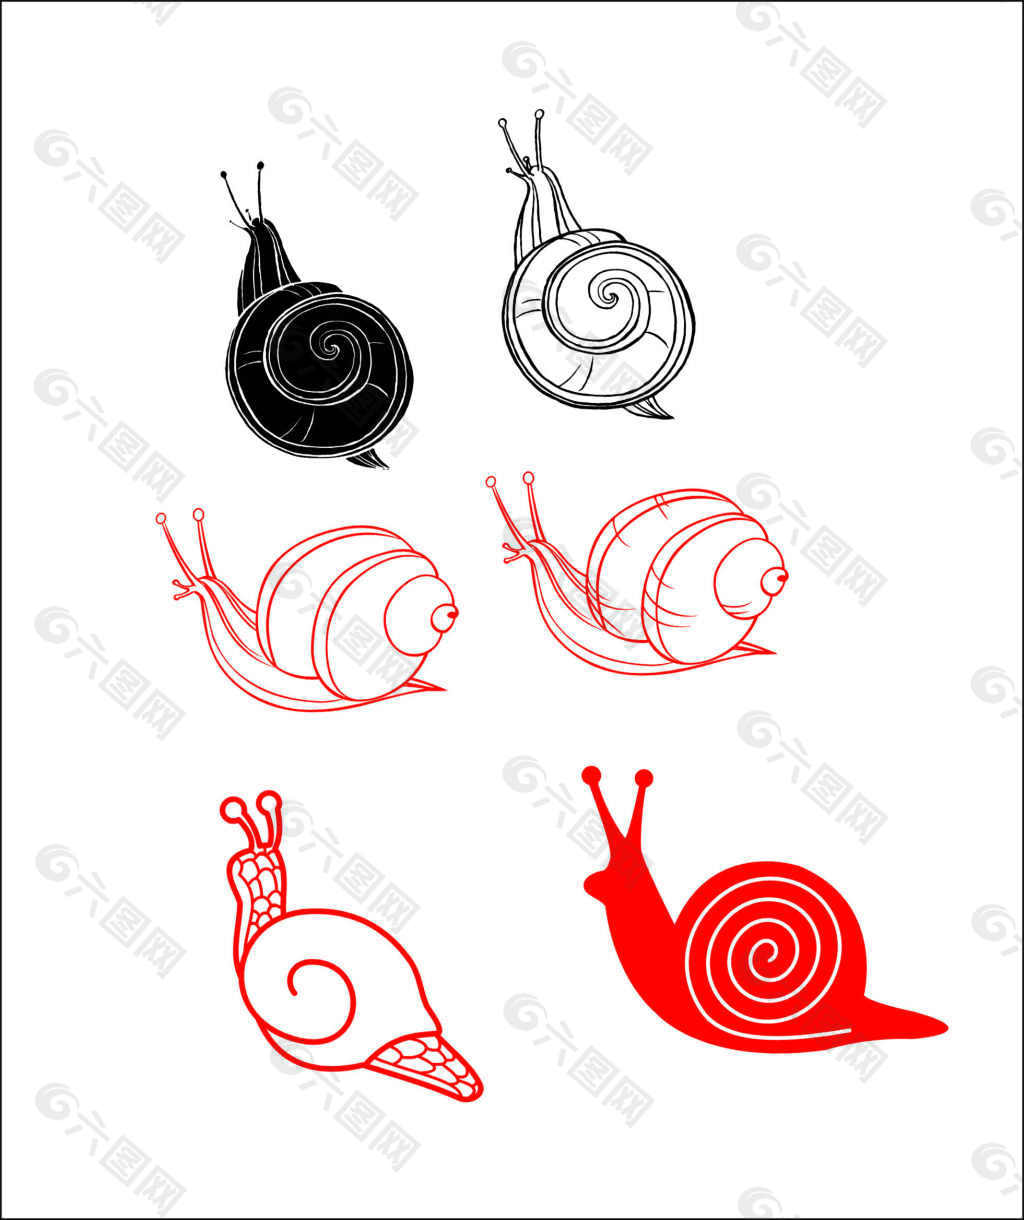 蜗牛联想到的图形创意图片